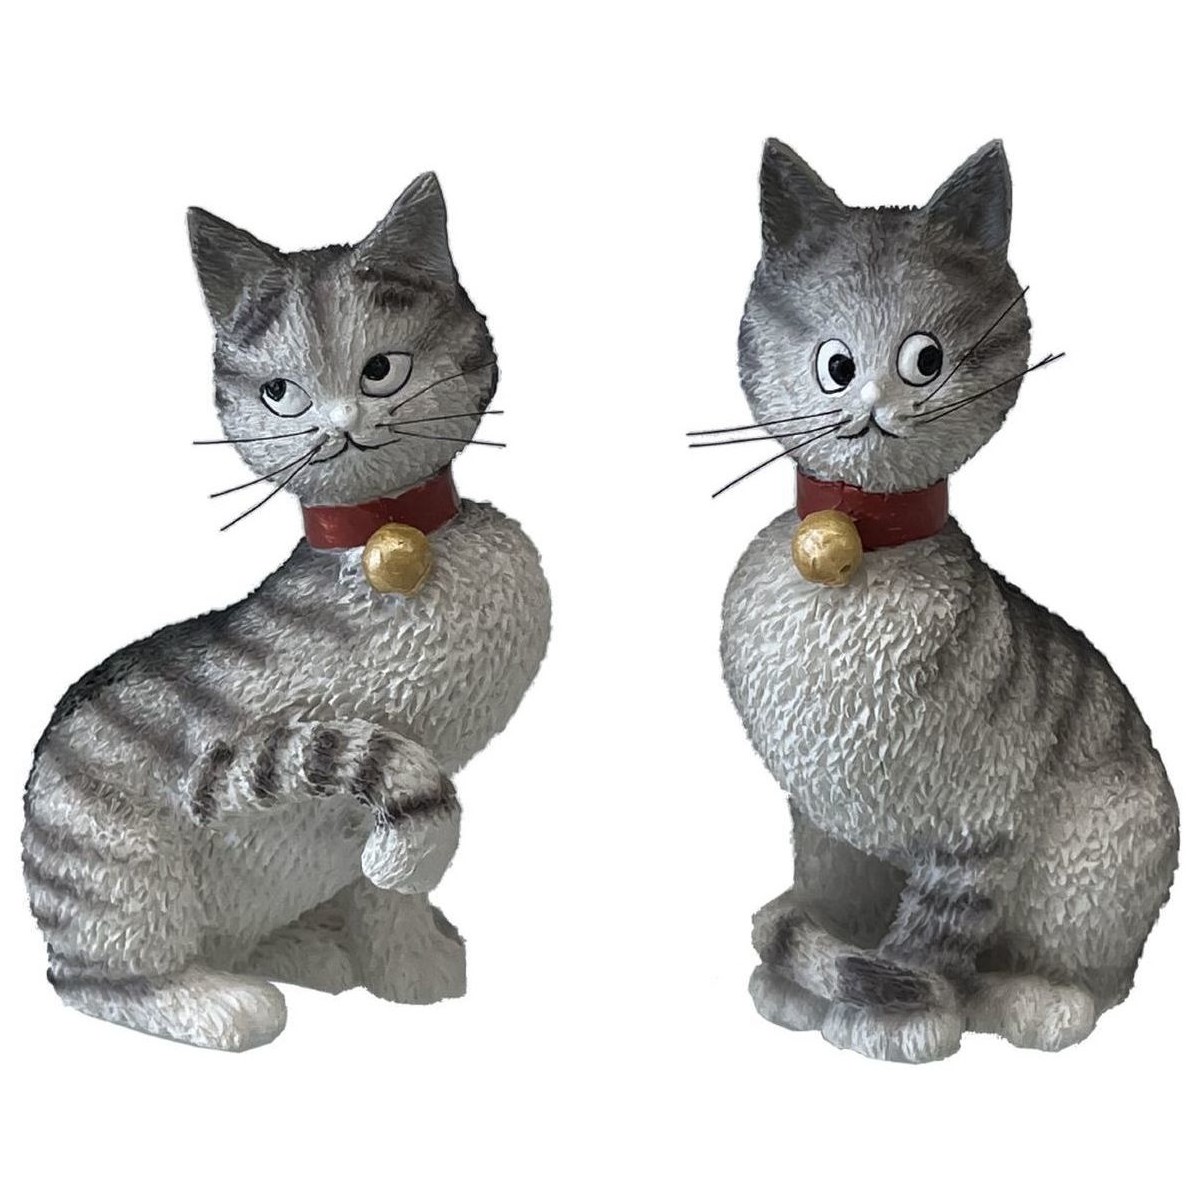 Maison & Déco Statuettes et figurines Parastone Statuettes Les chats par Dubout - 2 figrines Gris